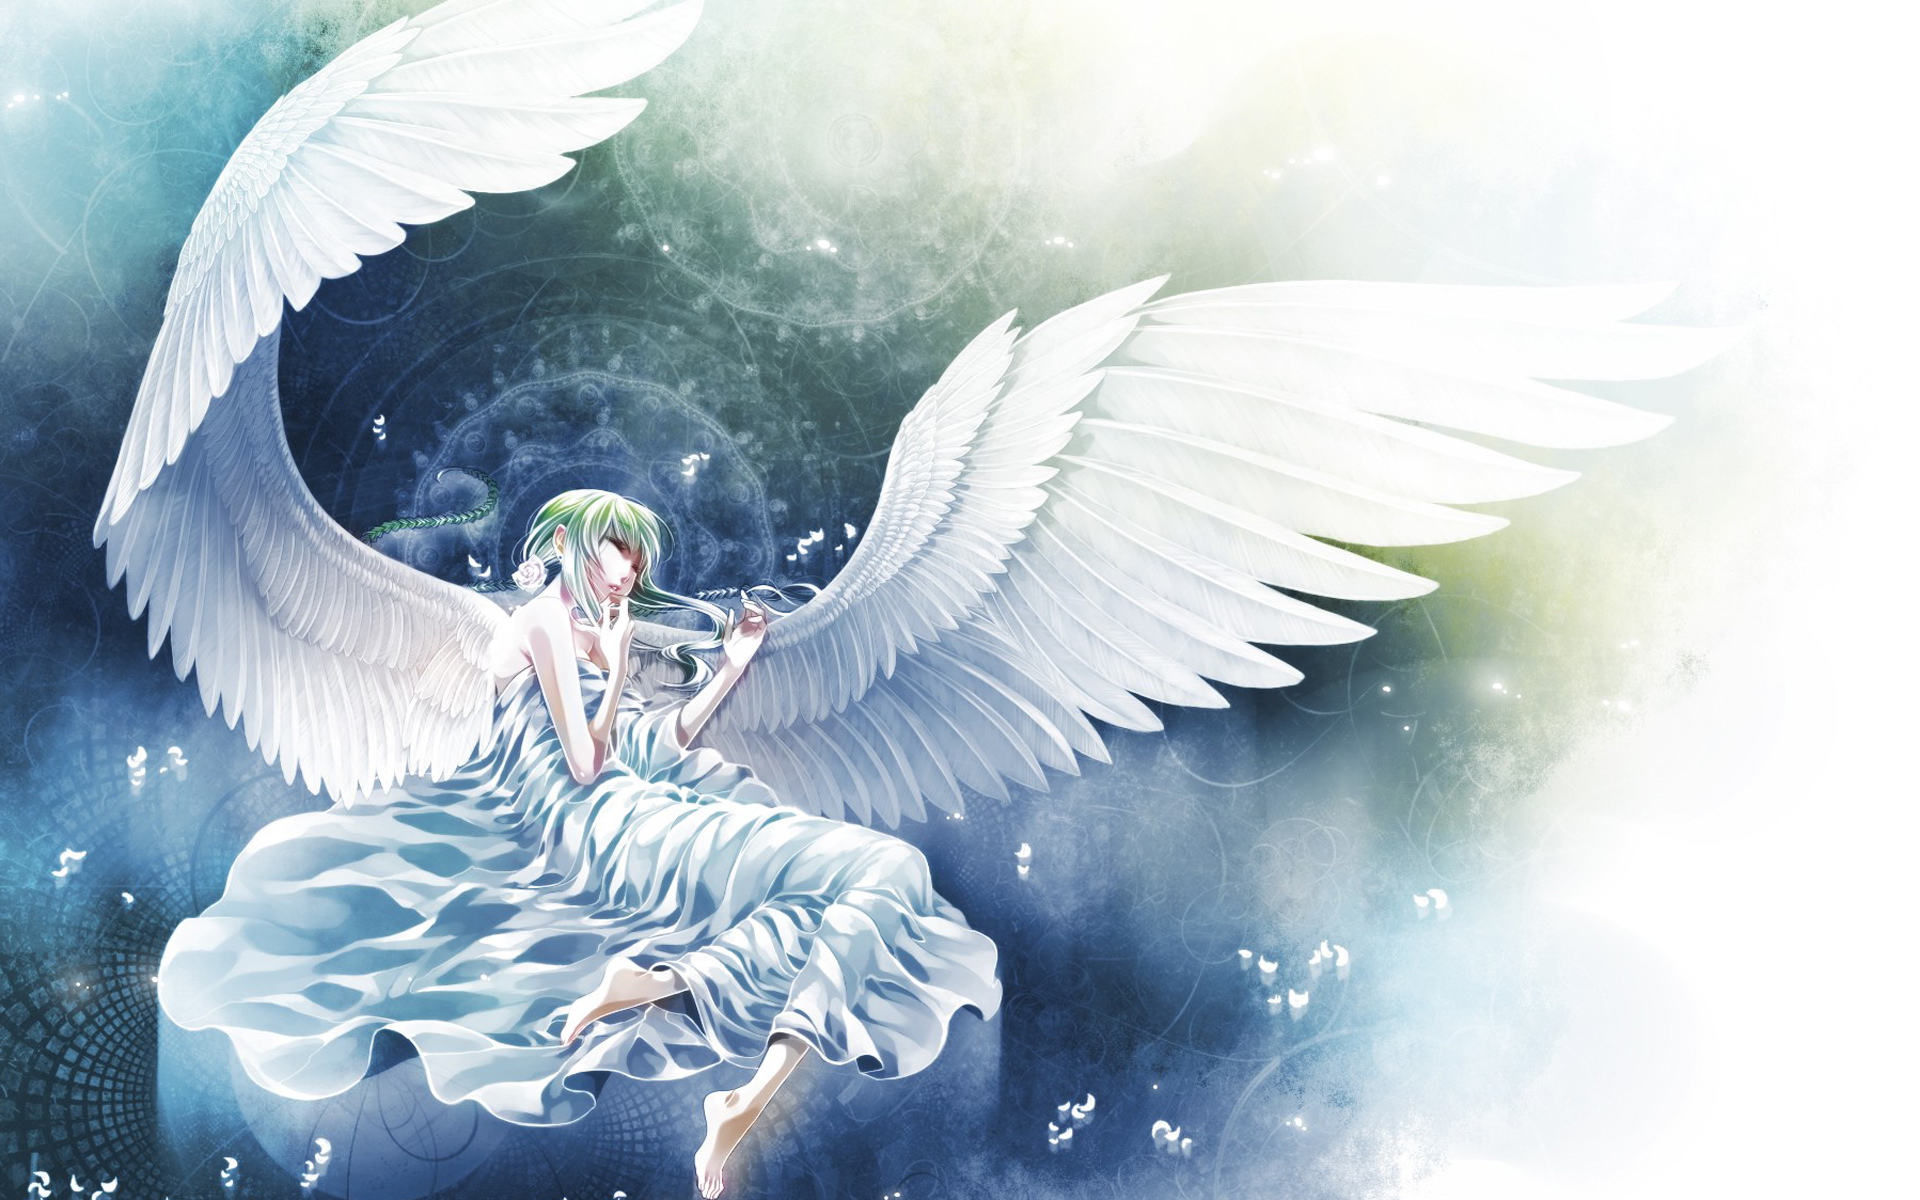 壁纸 : 1920x1080像素, 天使, 动漫女孩, Ayanami Rei, 霓虹创世纪福音战士, 翅膀 1920x1080 - wallpaperUp - 1511865 - 电脑桌面 ...